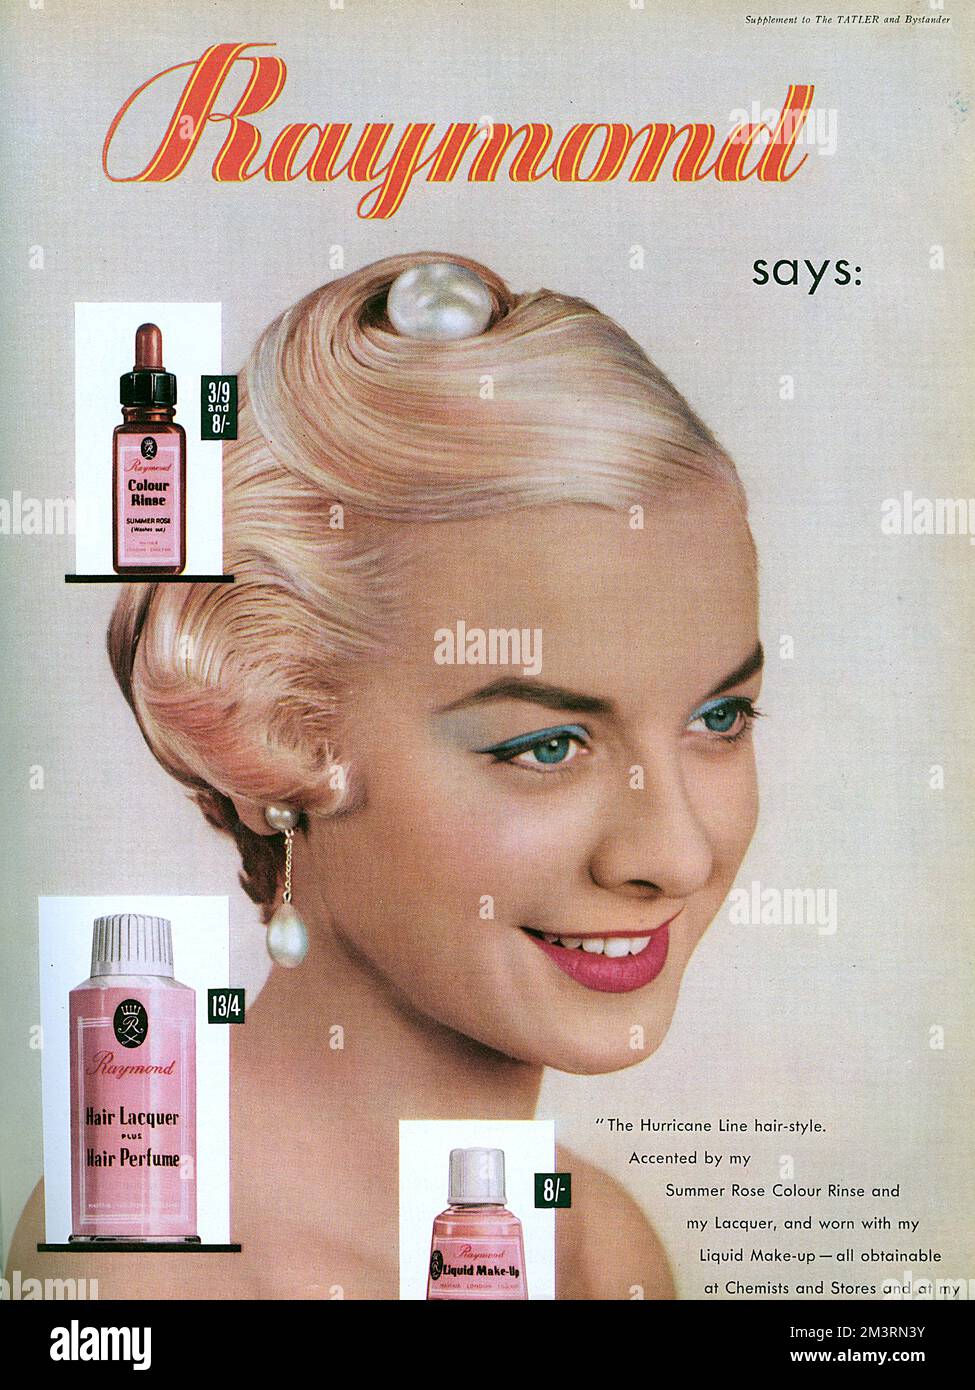 Werbung für den Hurrican Line Haarstil, die mithilfe von Produkten von Raymond erzielt wurde - eine sommerliche Rosenspülung, Haarlack und flüssiges Make-up. Ziemlich wild für 1958. Datum: 1958 Stockfoto